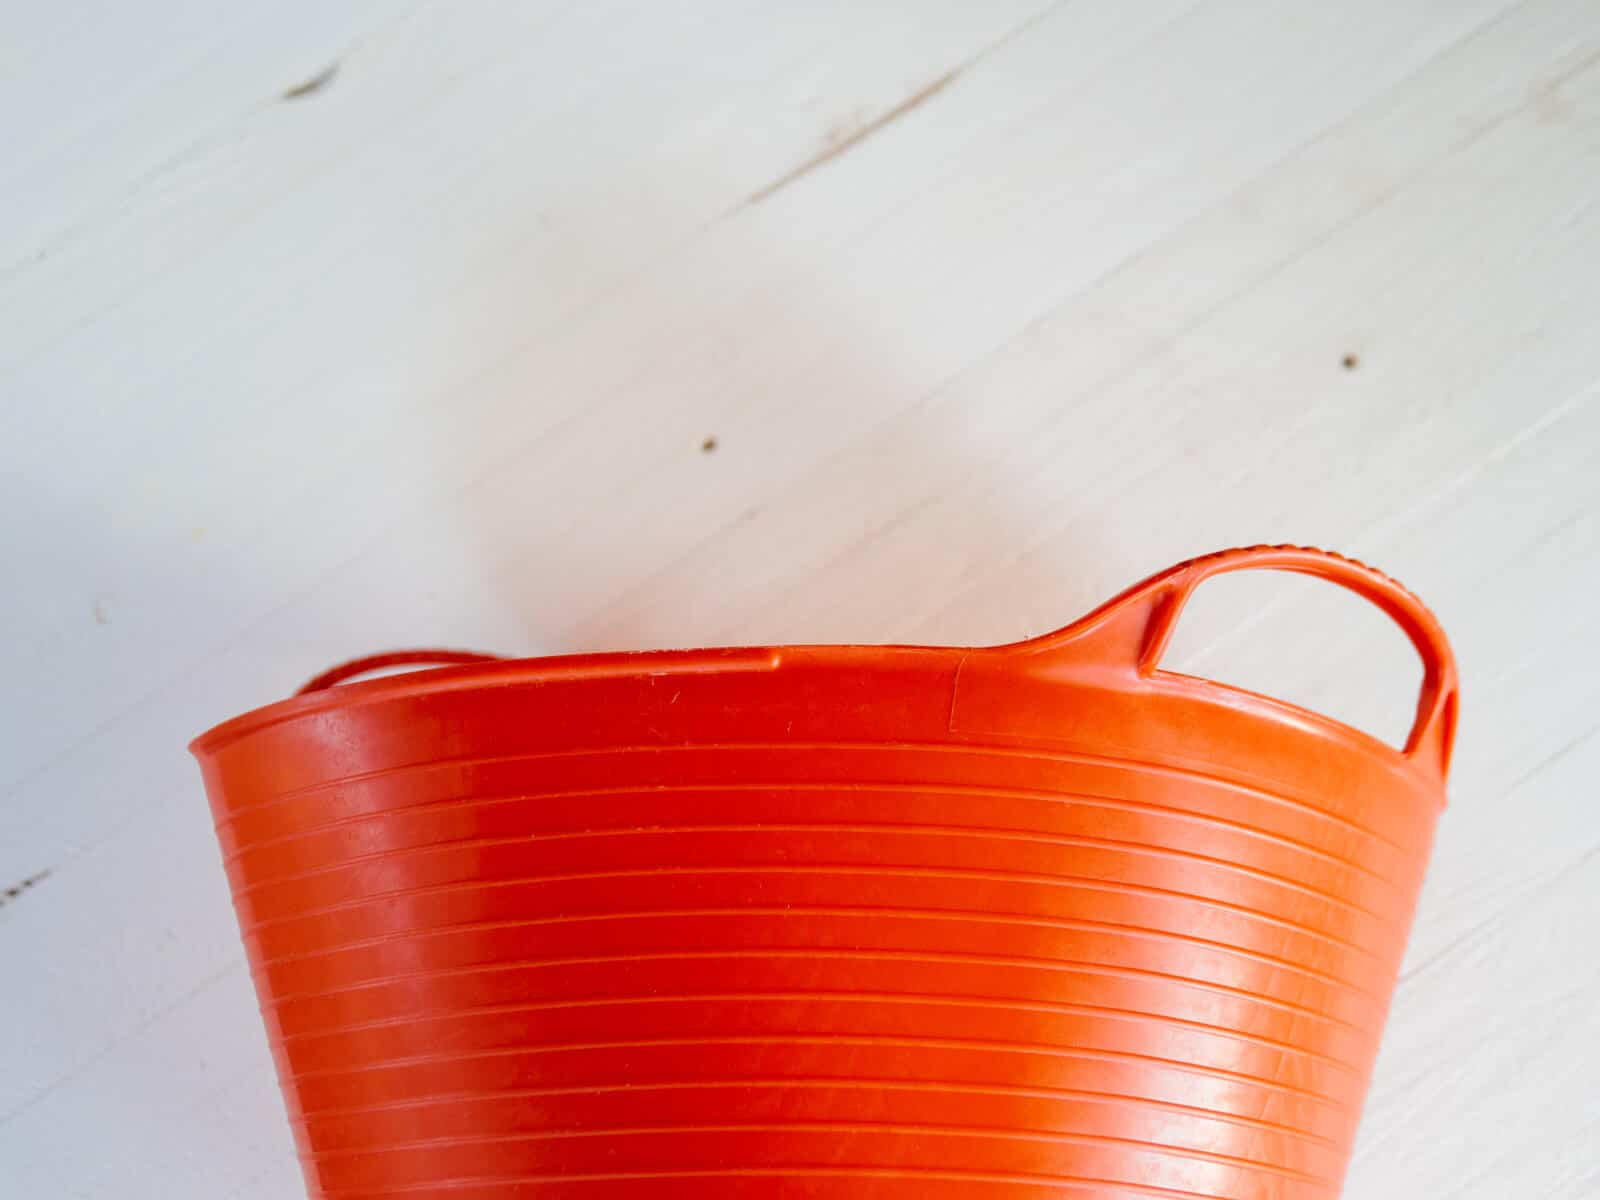 Buy a few flexible buckets for your everyday garden chores